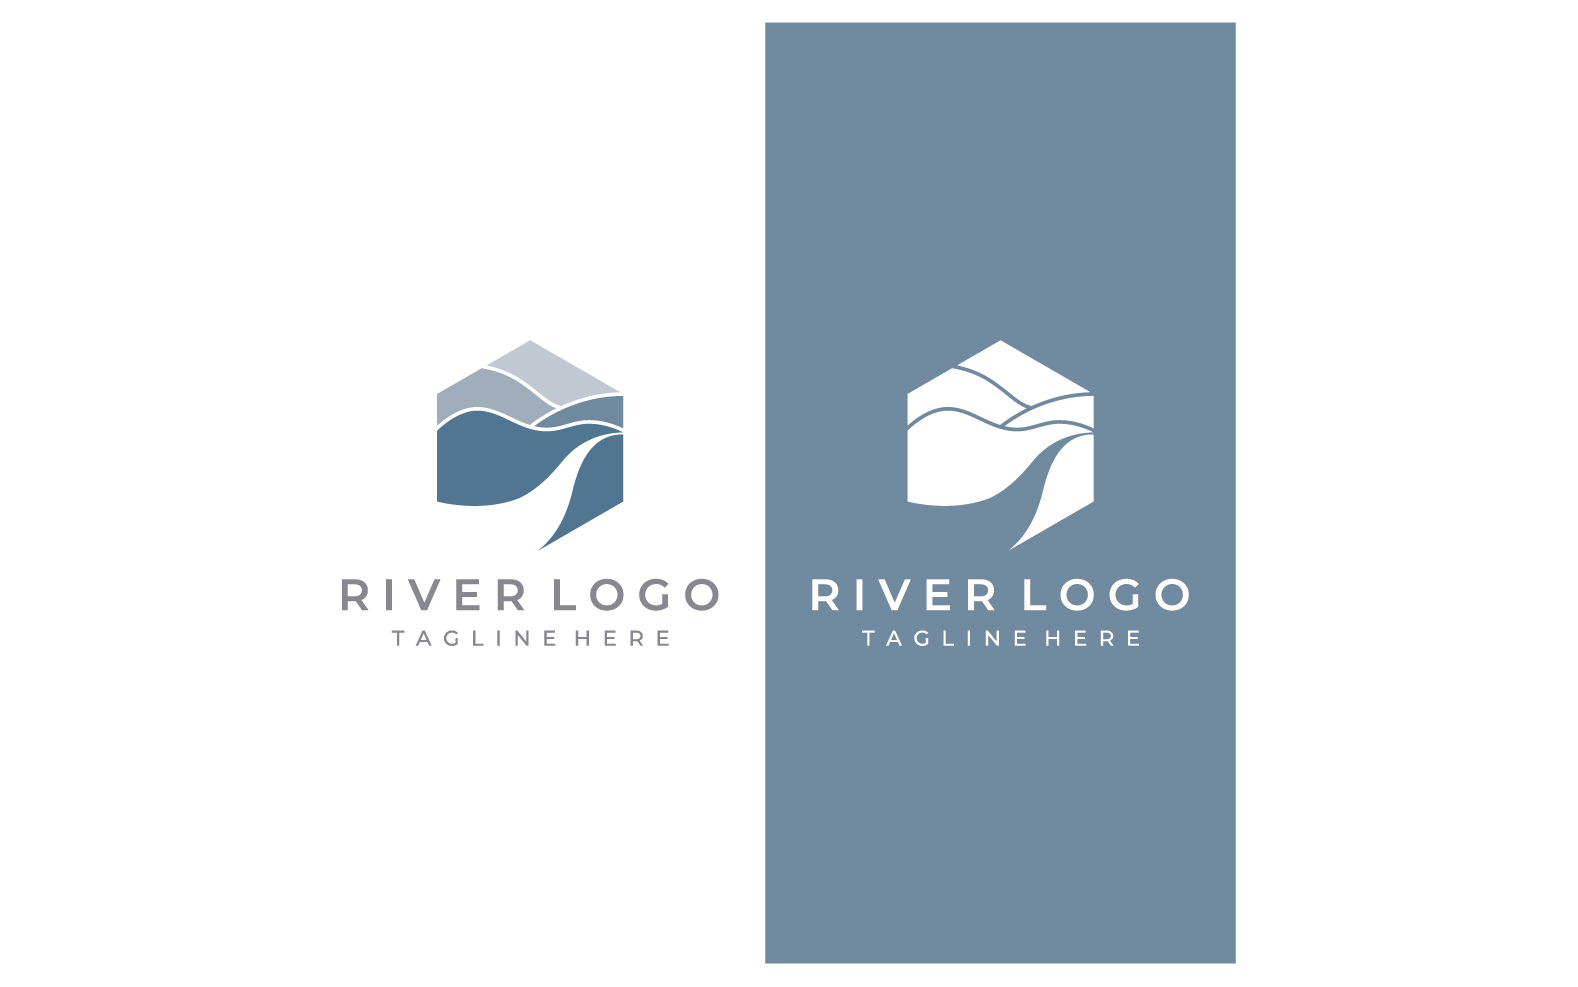 River nature logo and symbol vcetor 7